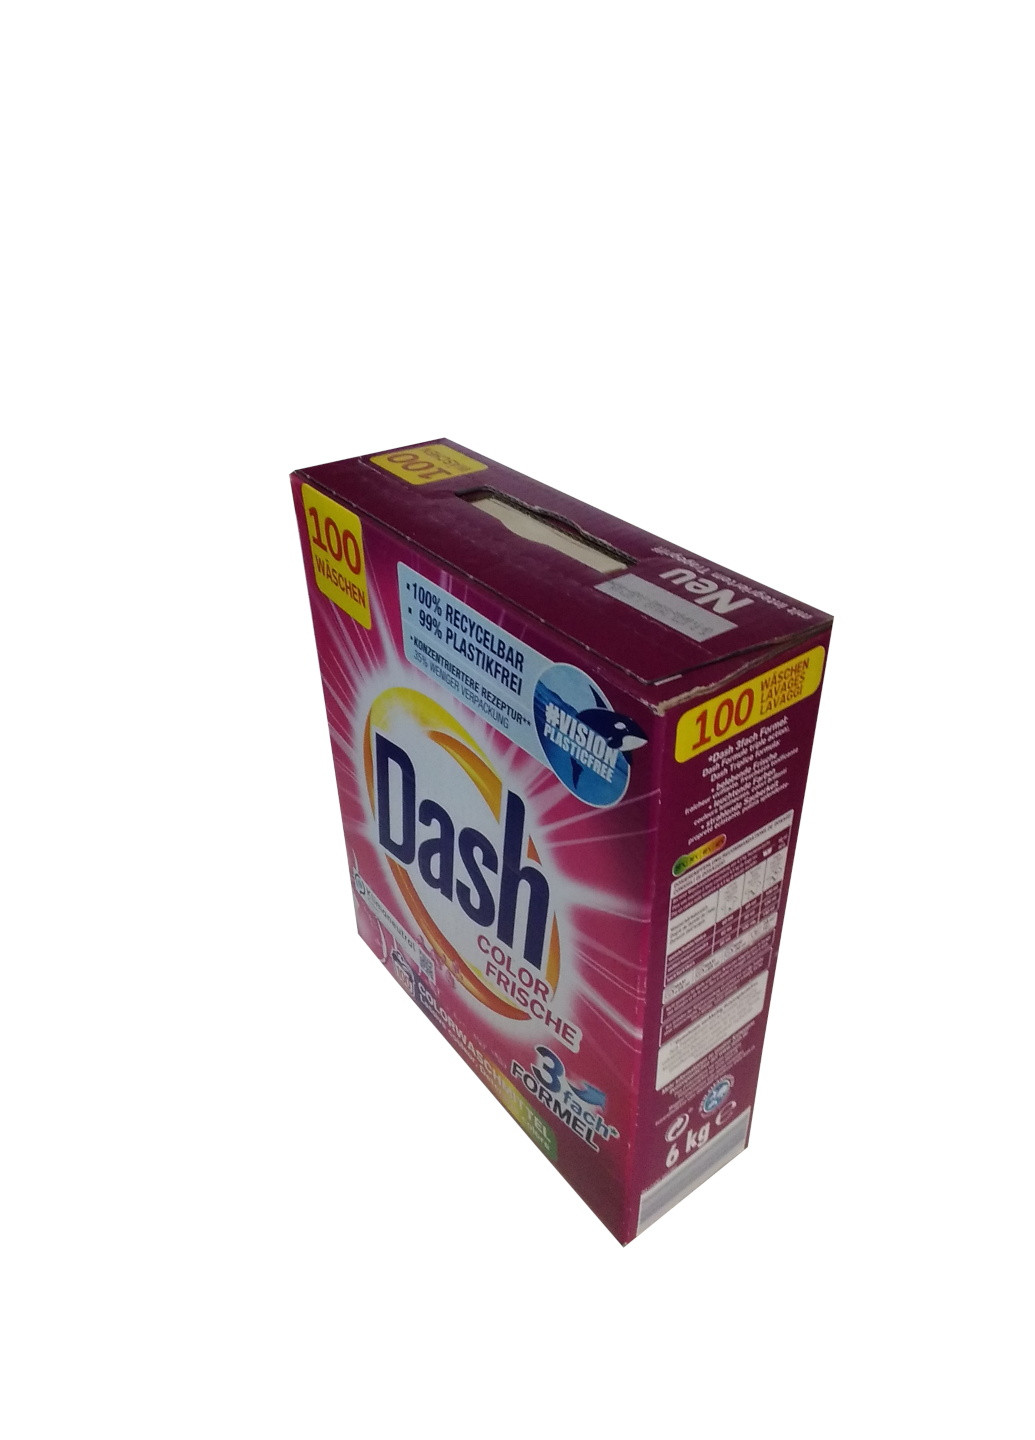 Стиральный порошок для цветных тканей Color Frische 6 кг 100 стирок Dash